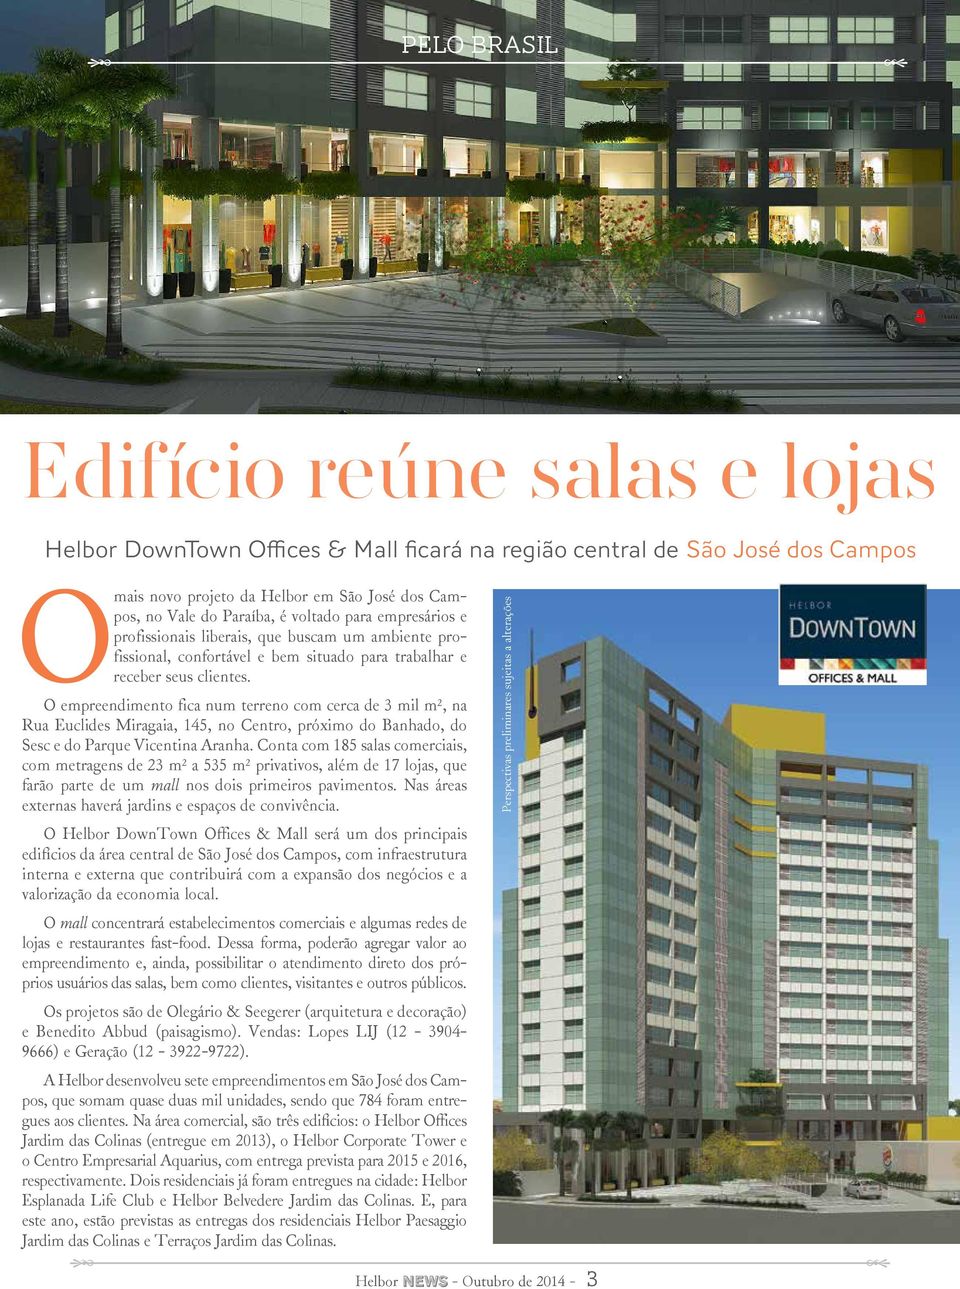 O empreendimento fica num terreno com cerca de 3 mil m², na Rua Euclides Miragaia, 145, no Centro, próximo do Banhado, do Sesc e do Parque Vicentina Aranha.